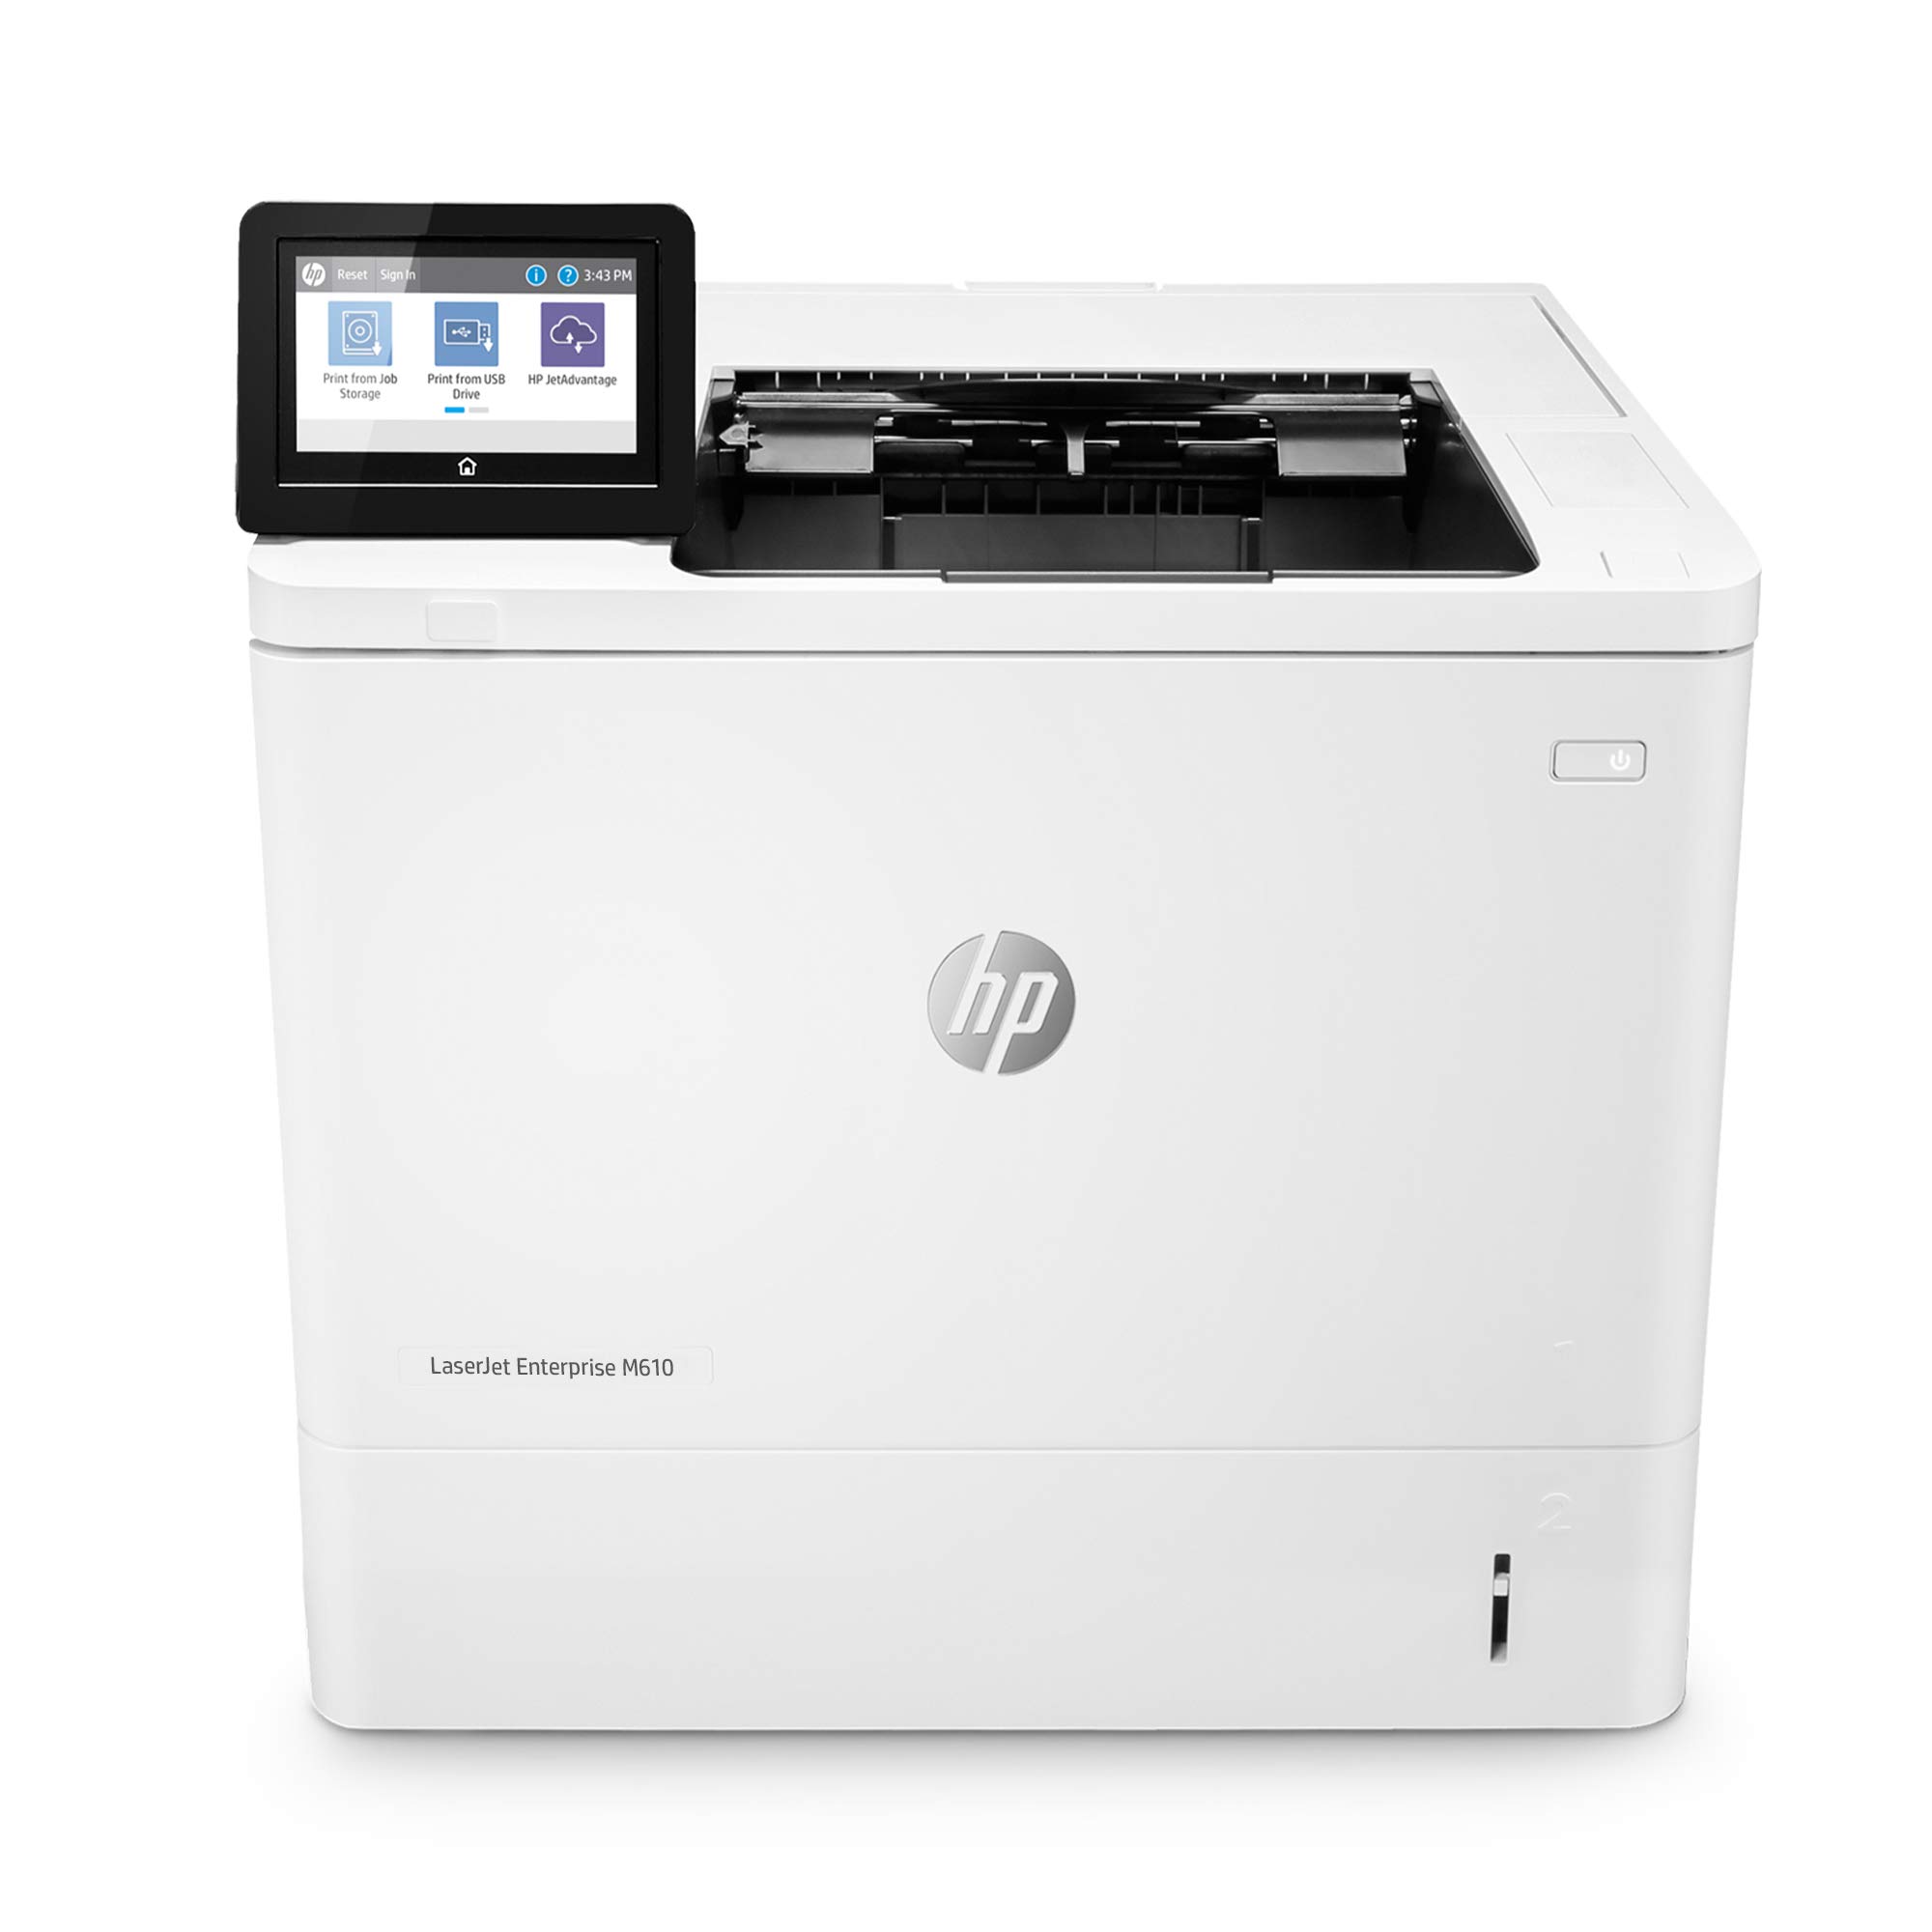 HP लेजरजेट एंटरप्राइज M610dn मोनोक्रोम प्रिंटर बिल्ट-इन...